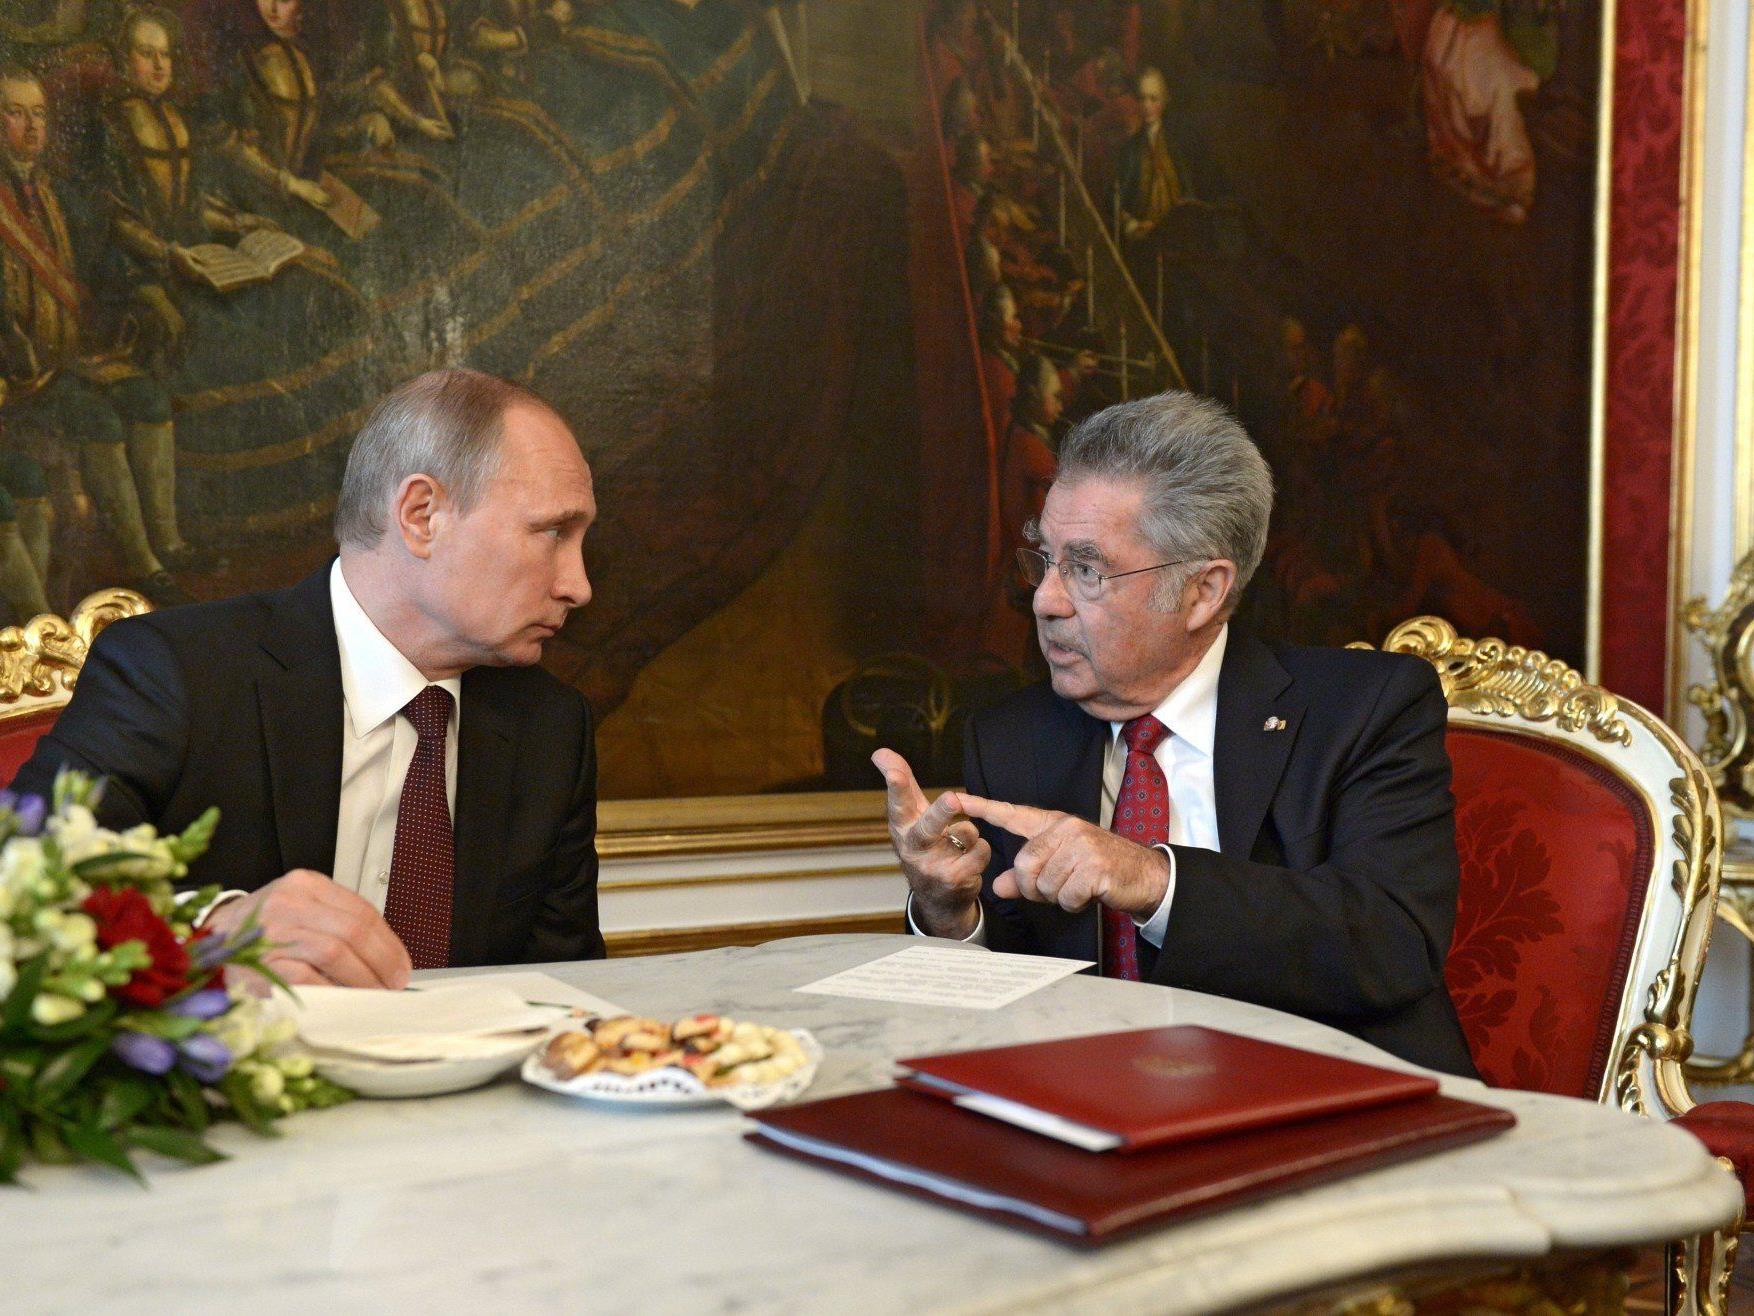 Bundespräsident Fischer verteidigte erneut Wien-Besuch Putins